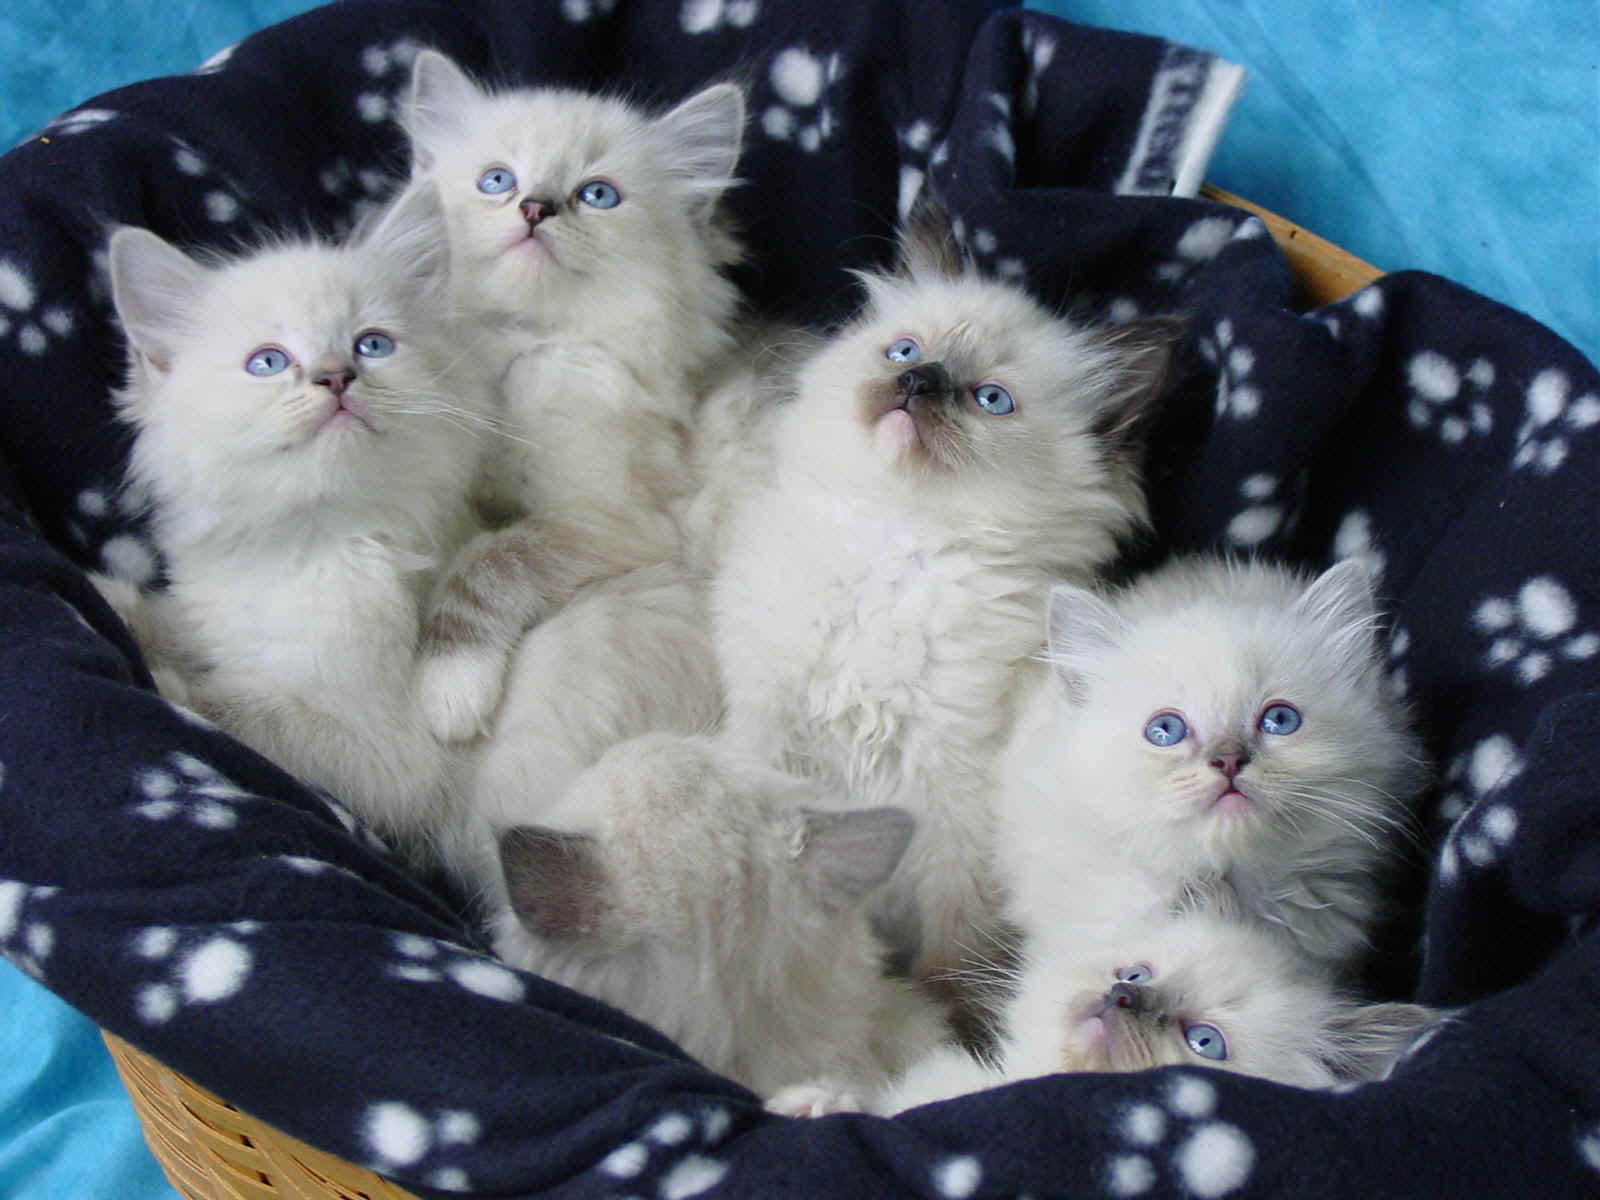 Basket Of Kittens